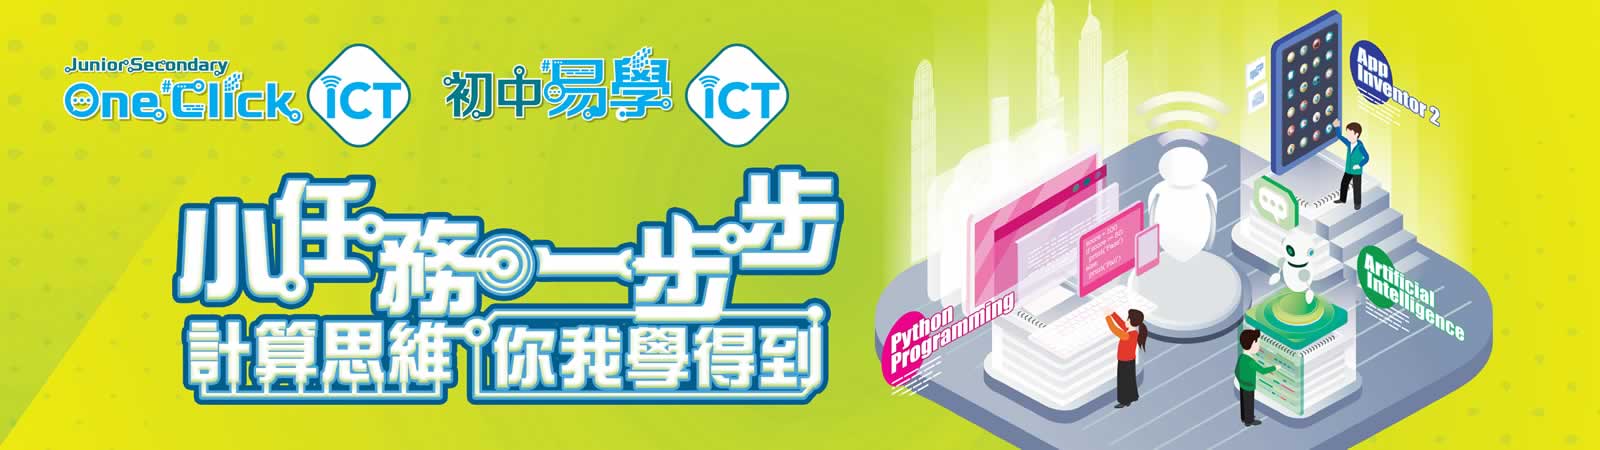 Junior Secondary One Click ICT | 初中易學 ICT